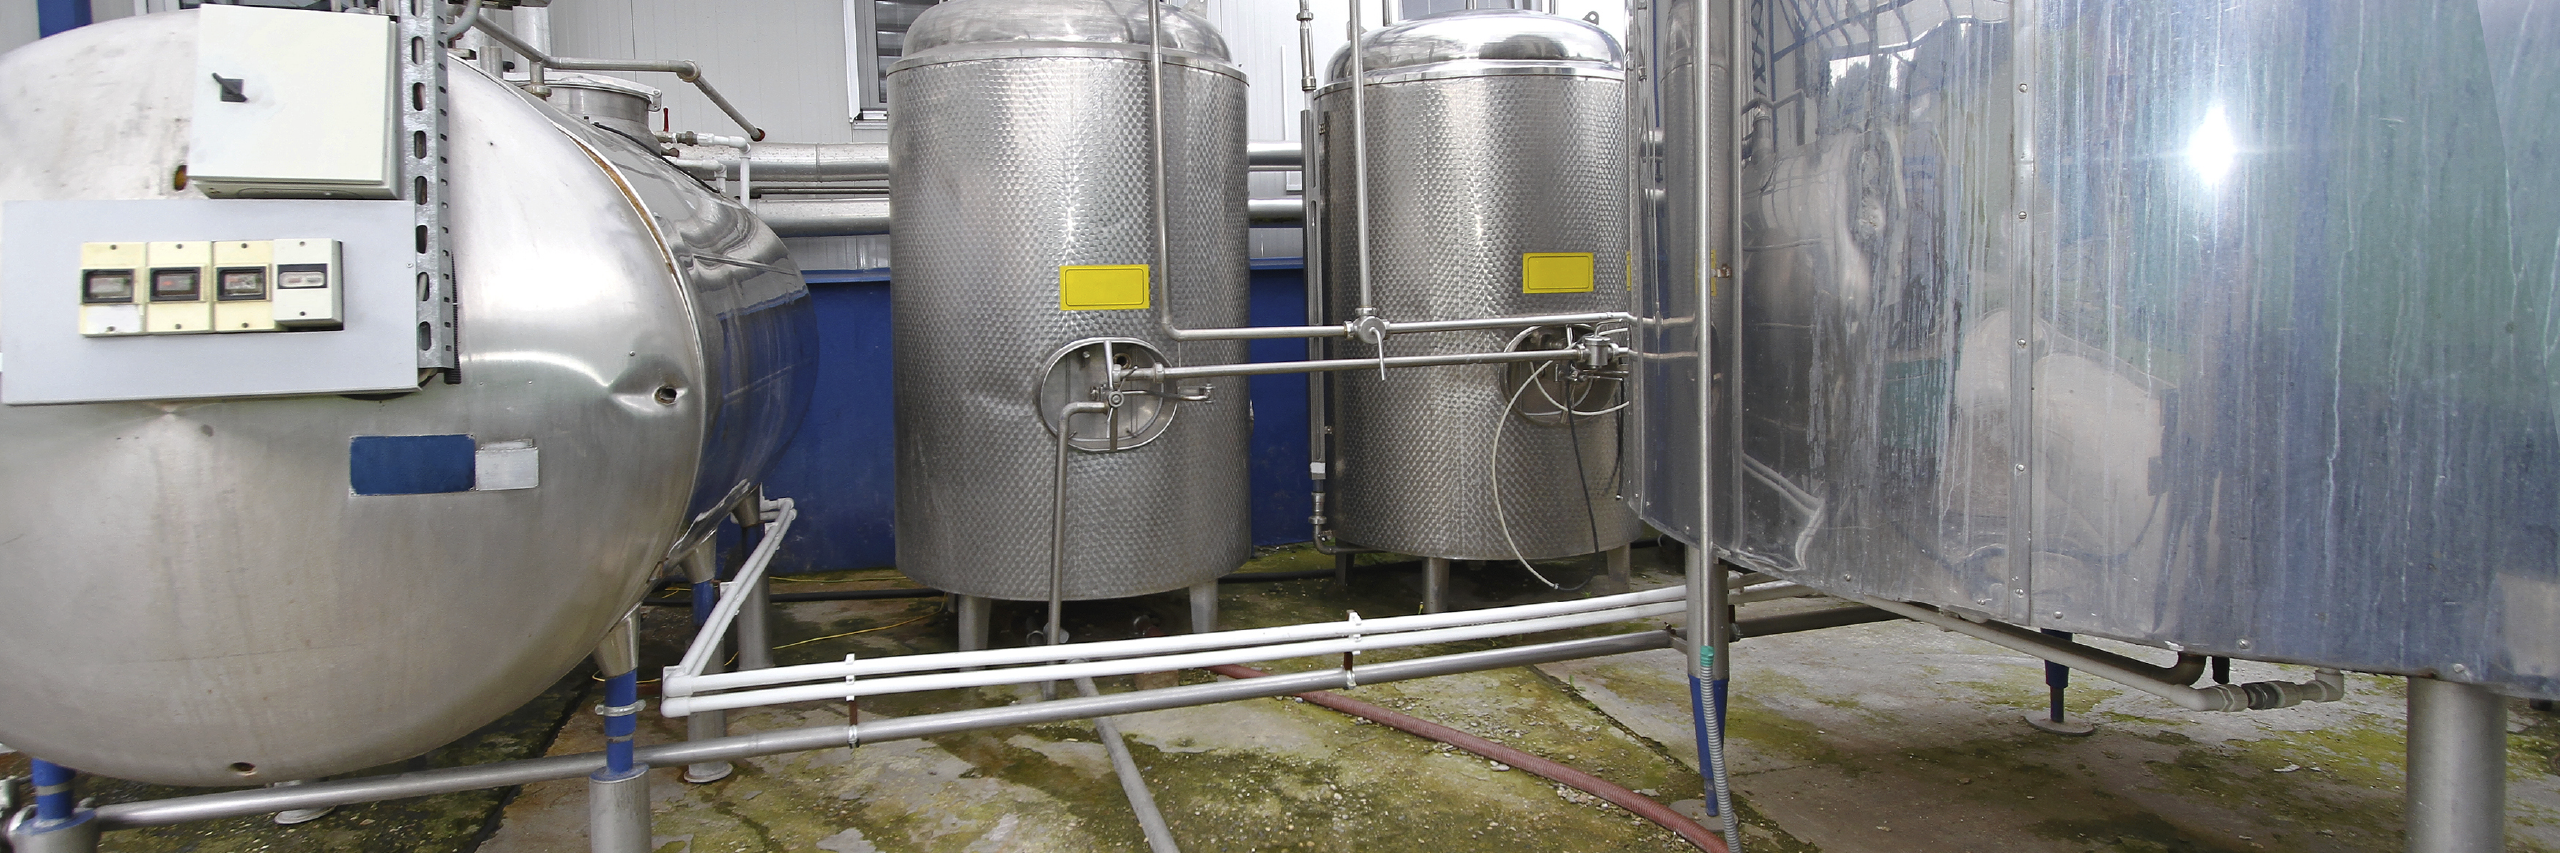 milk tanks in dairy farm